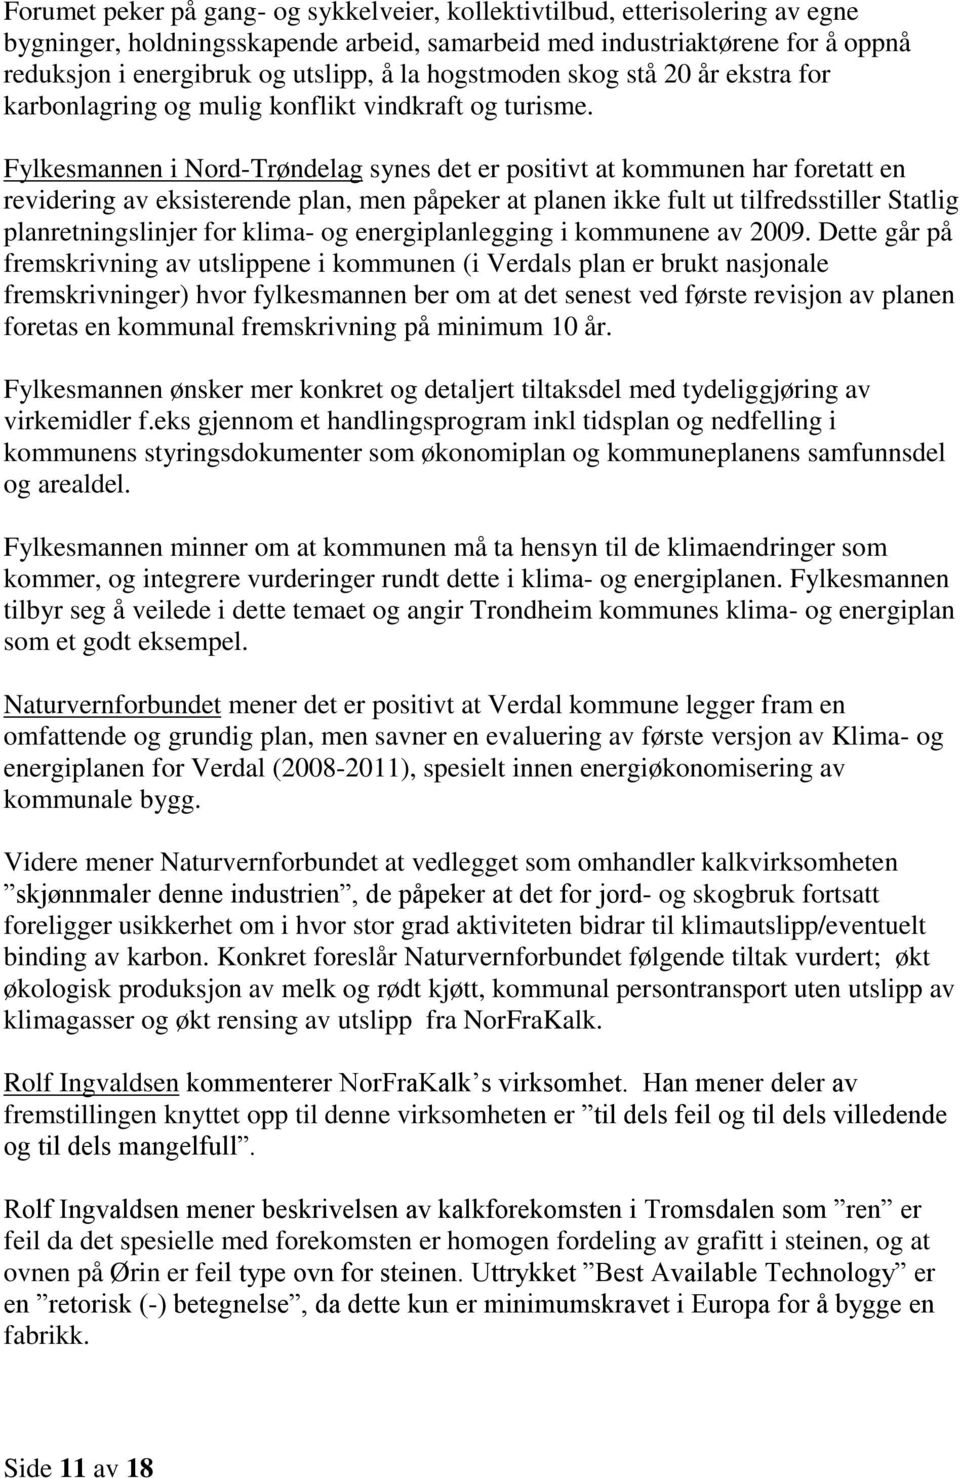 Fylkesmannen i Nord-Trøndelag synes det er positivt at kommunen har foretatt en revidering av eksisterende plan, men påpeker at planen ikke fult ut tilfredsstiller Statlig planretningslinjer for